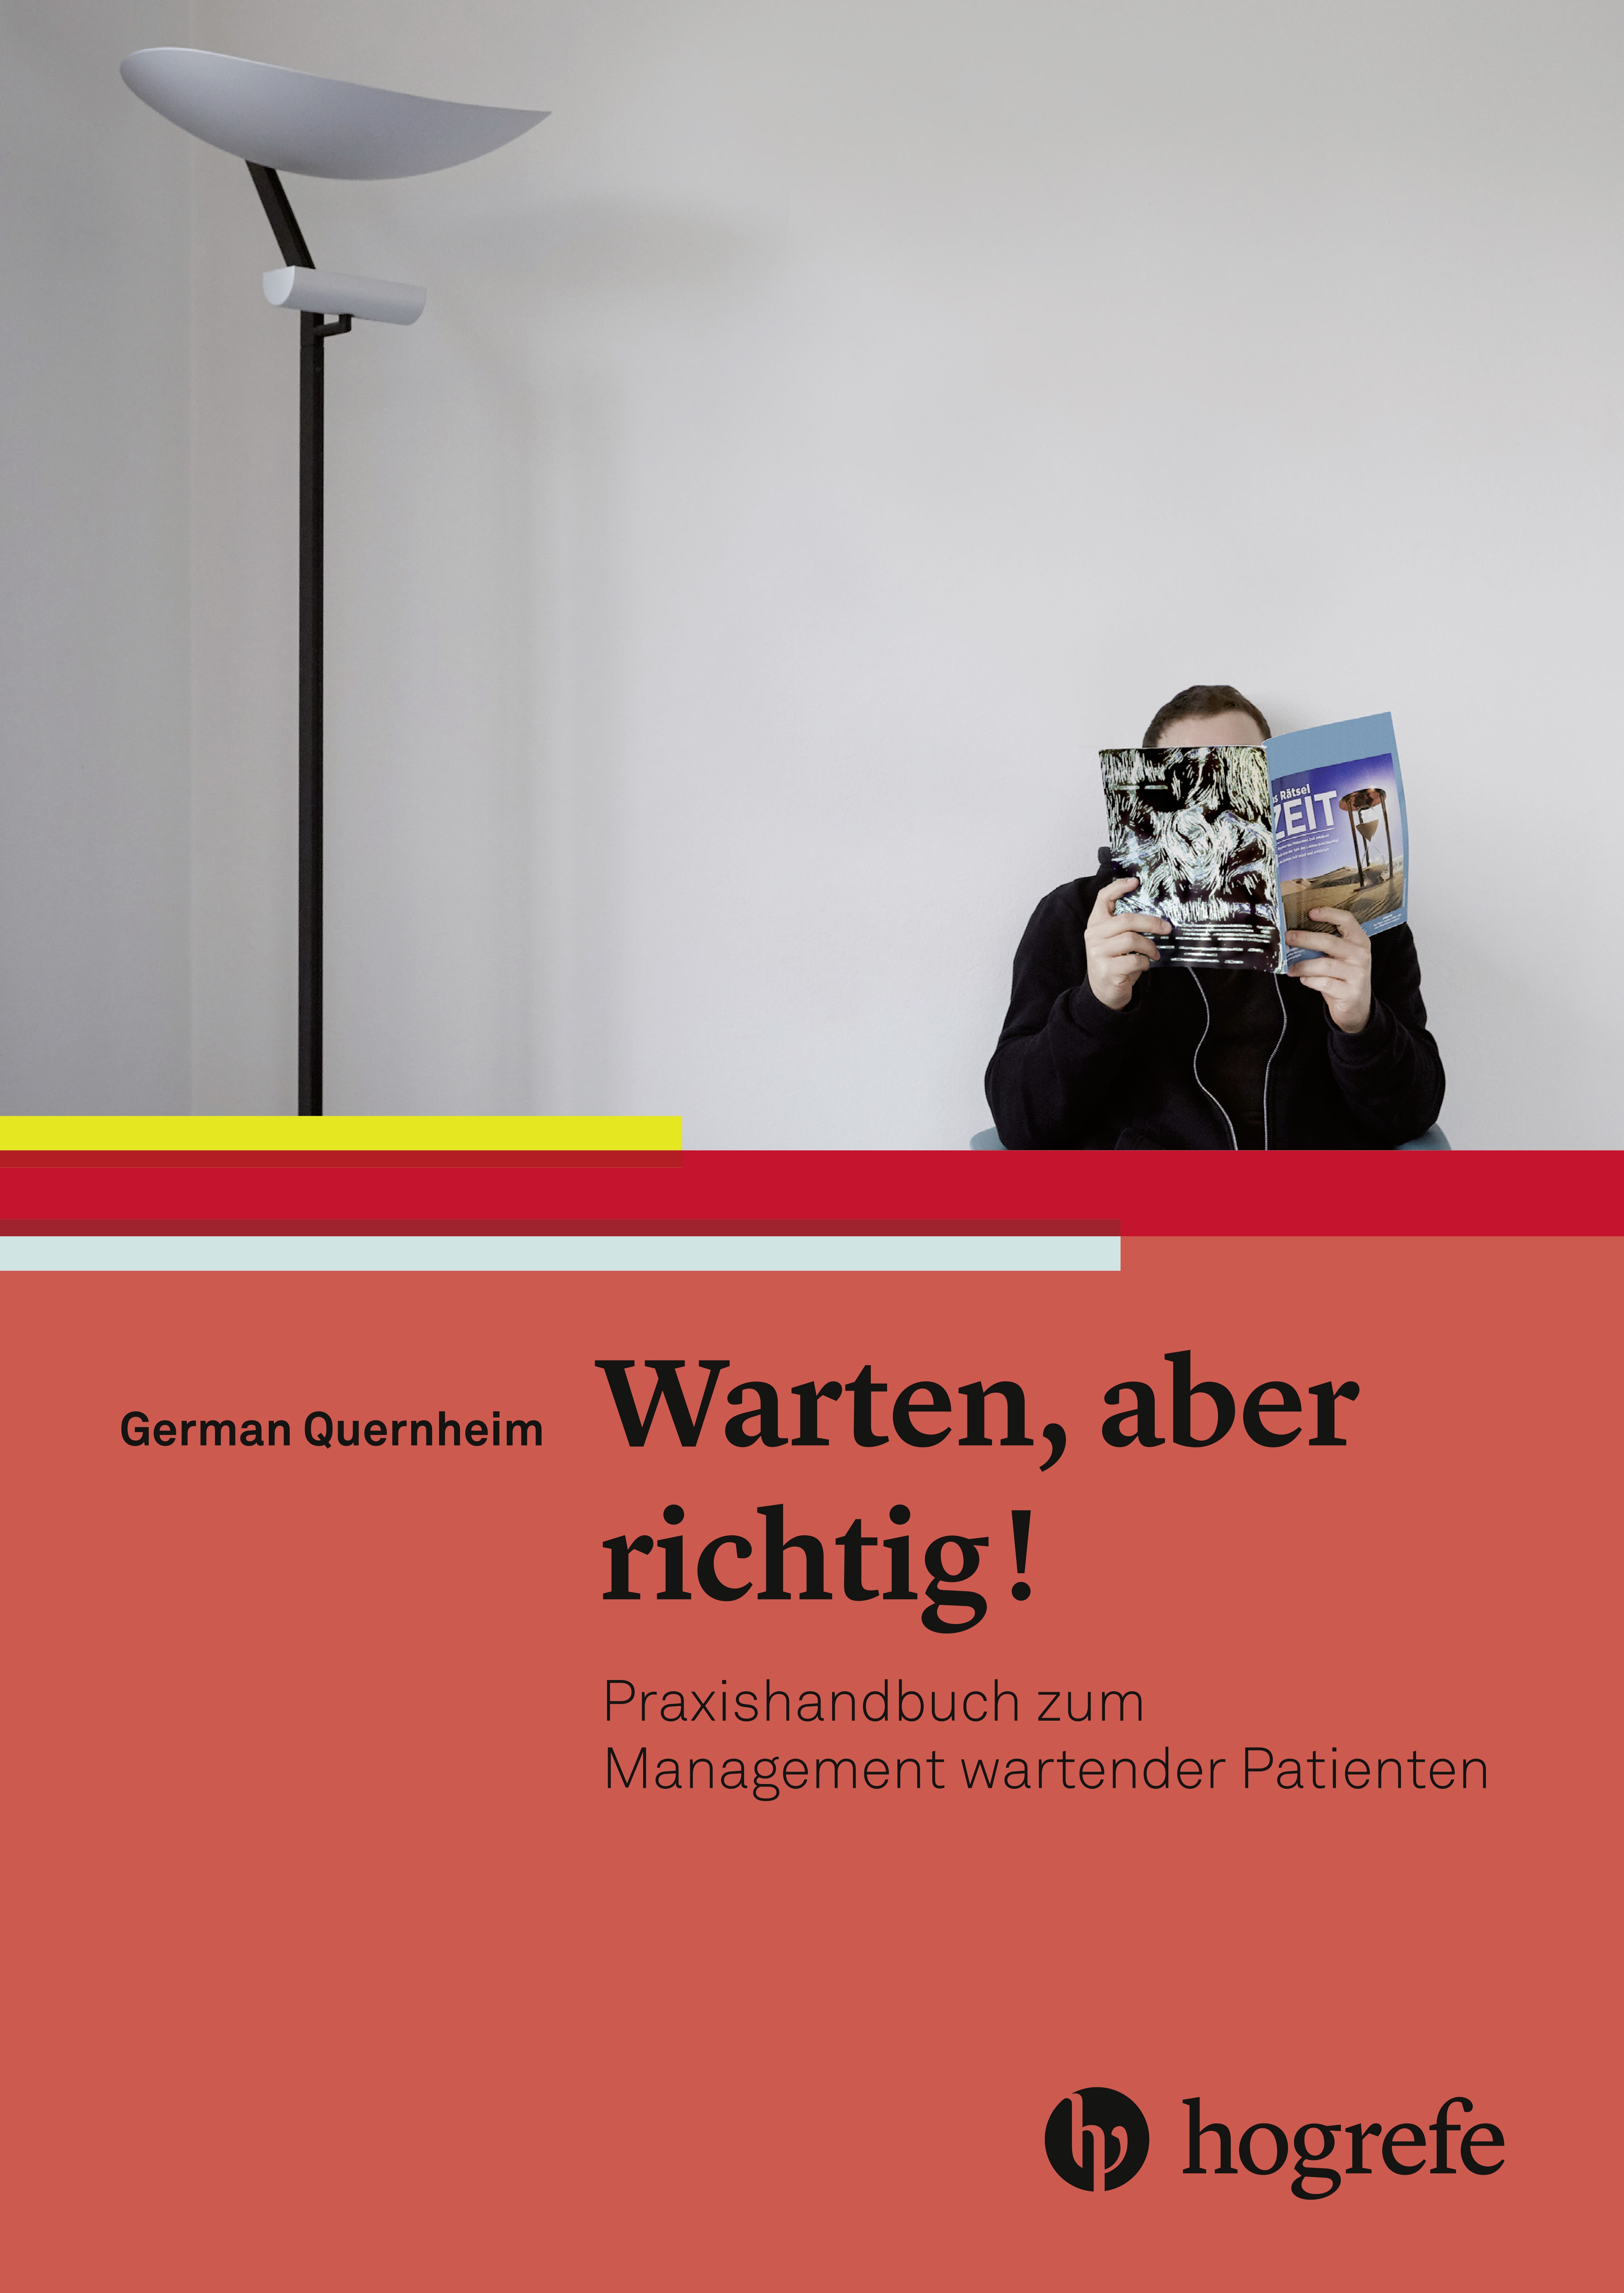 HOG_Quernheim_Warten.indd